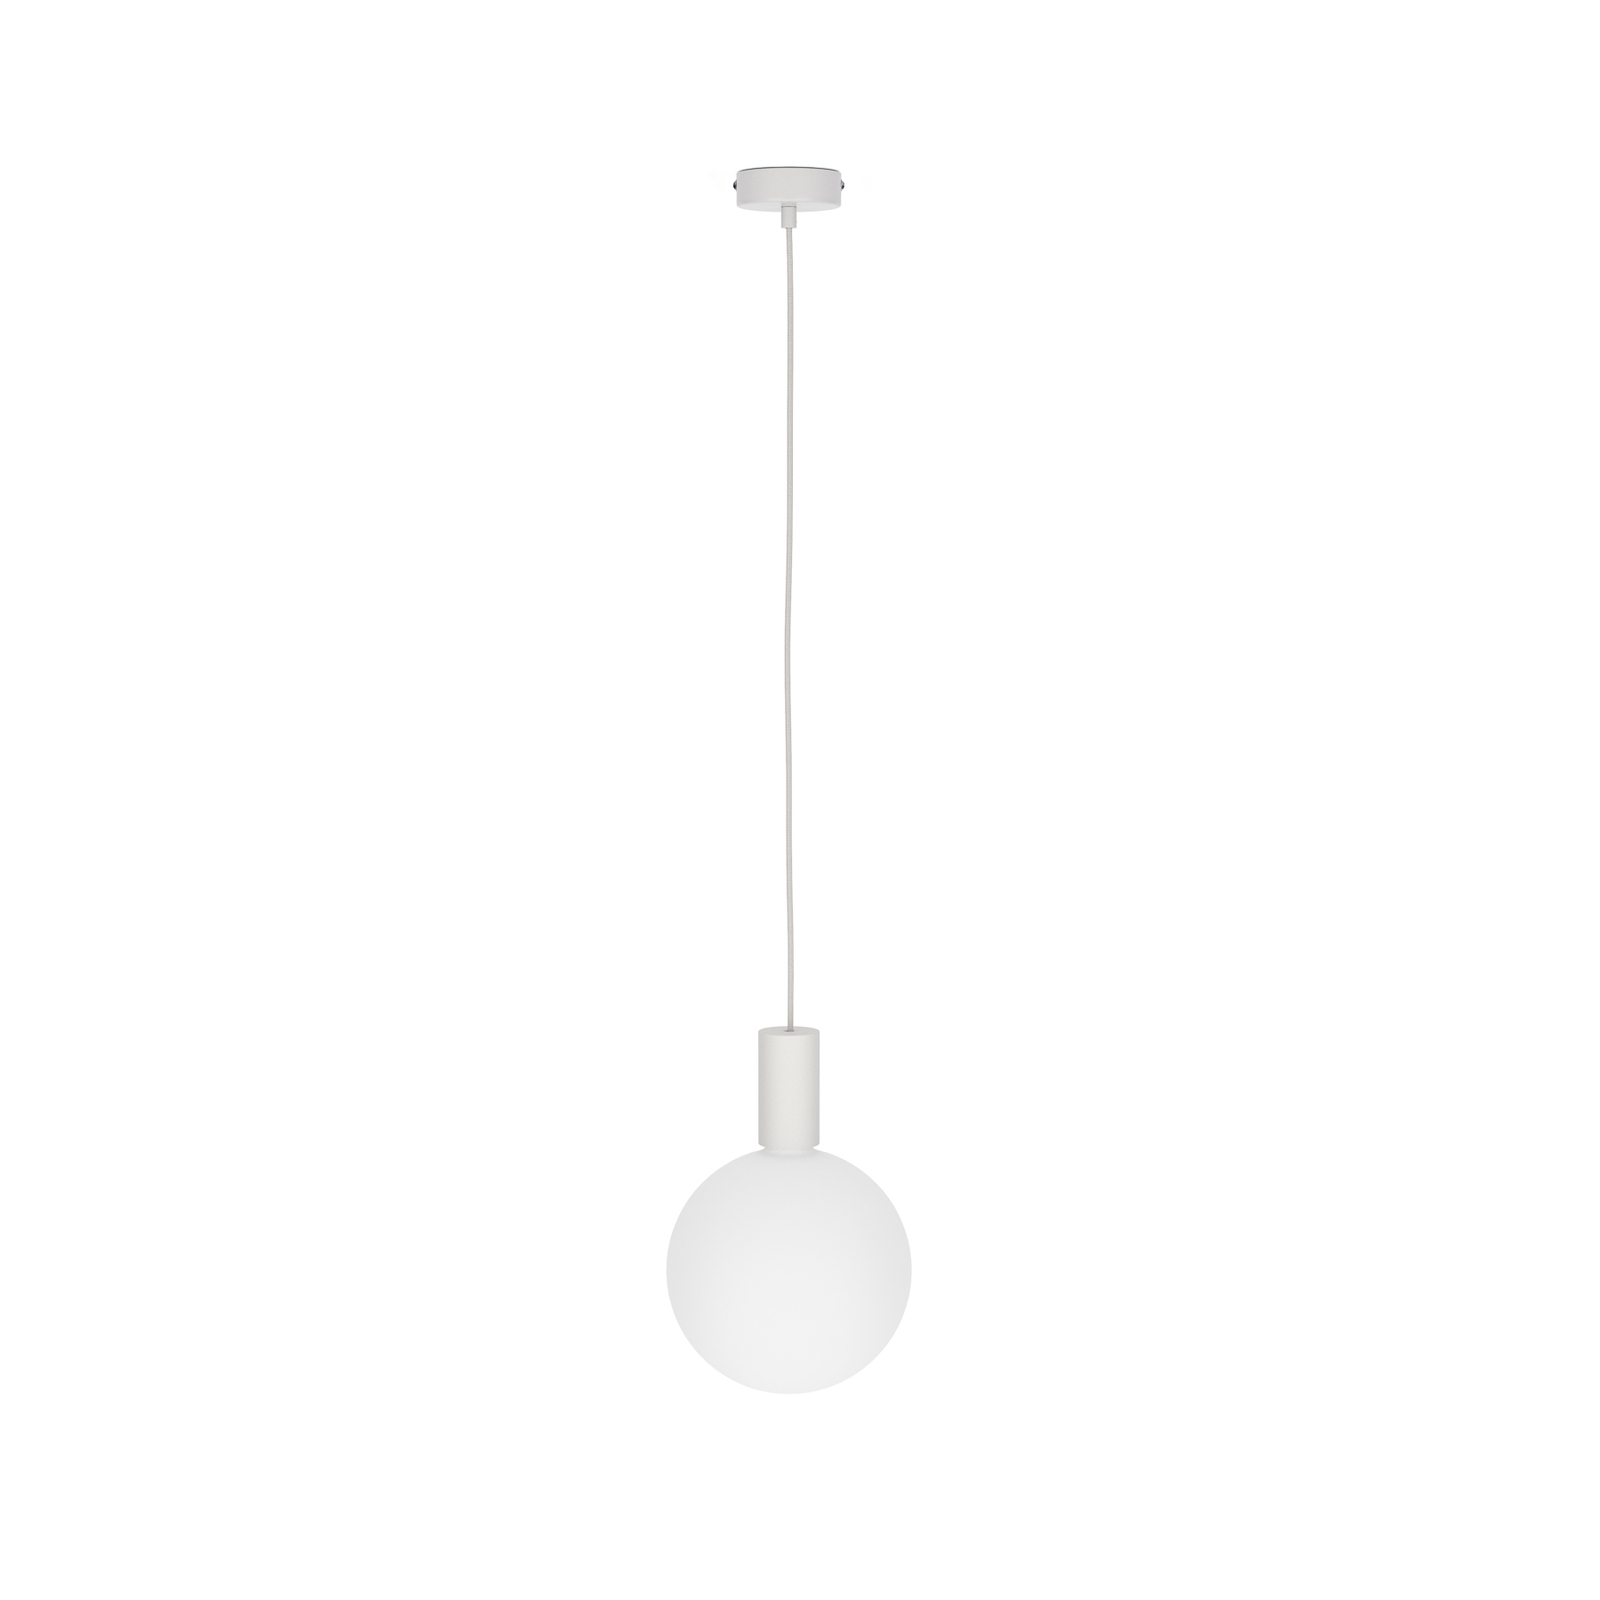 Tala Lampă suspendată Triplu pandantiv Single 1-light, E27 opal, alb